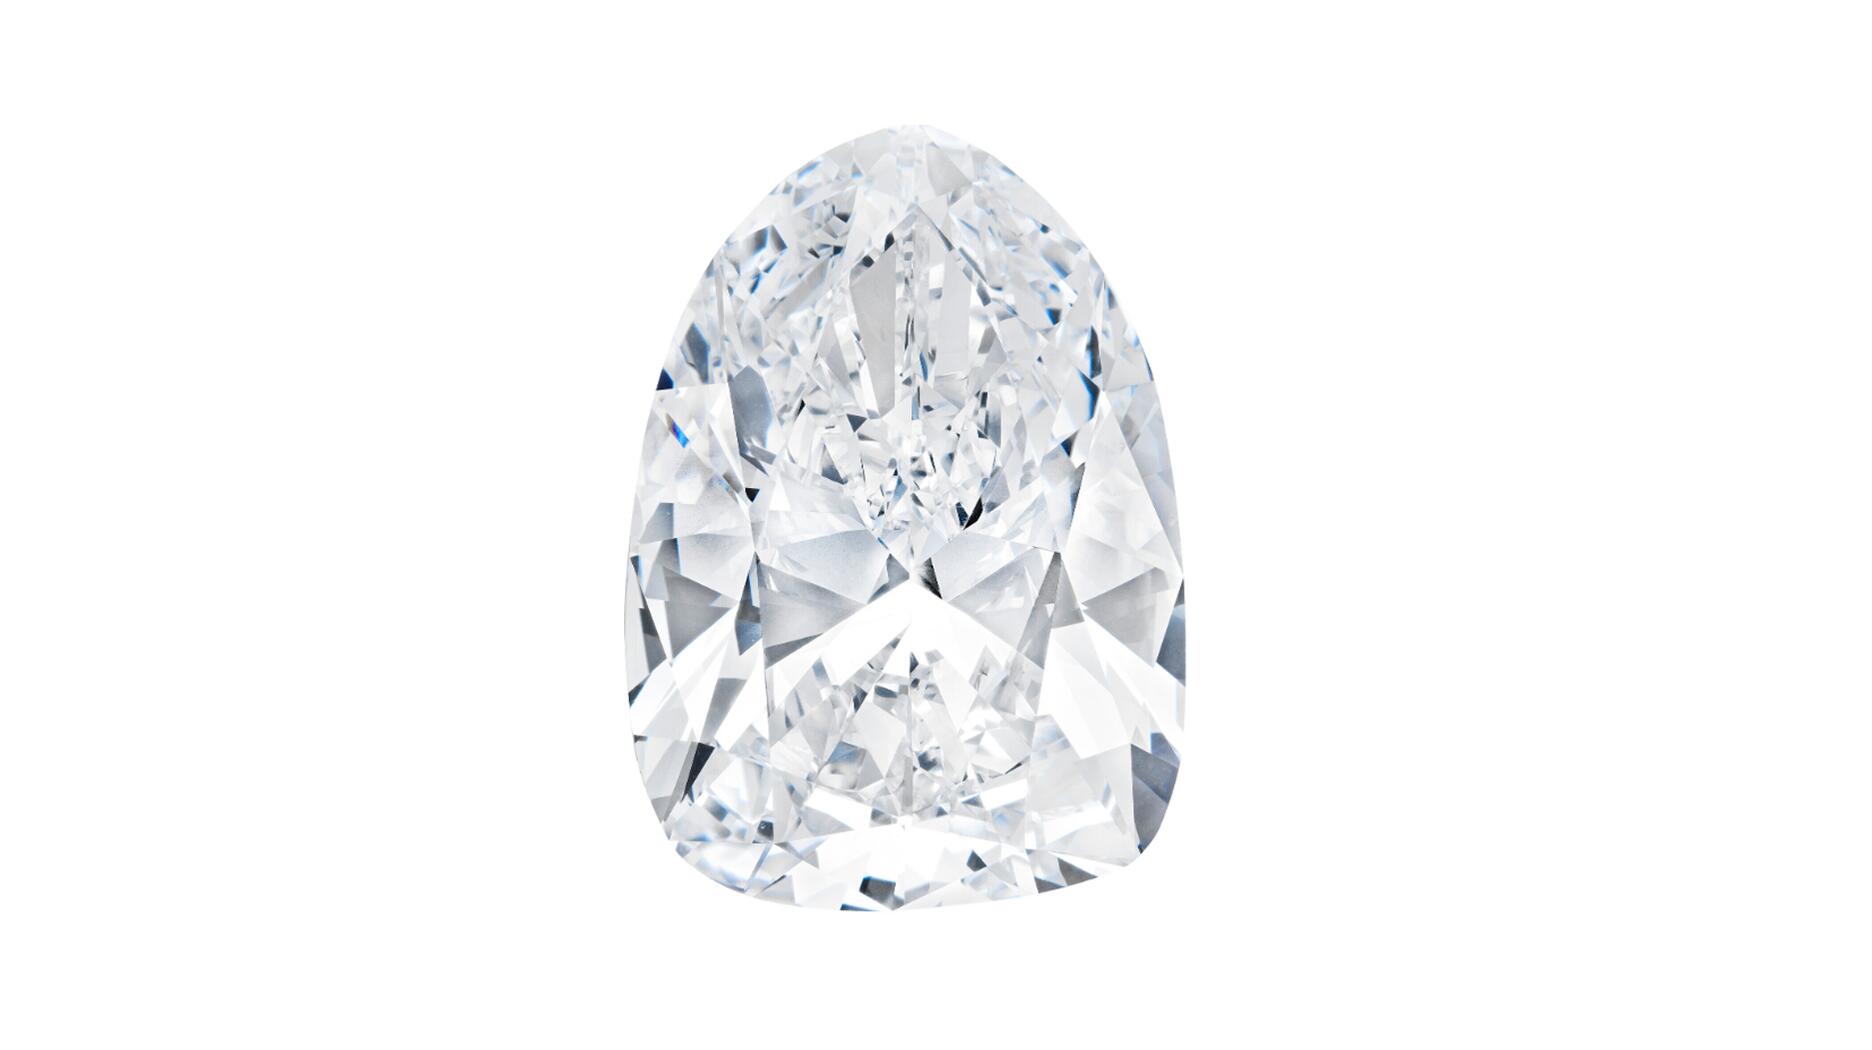 Light of Peace diamond, Christies, diamond auction